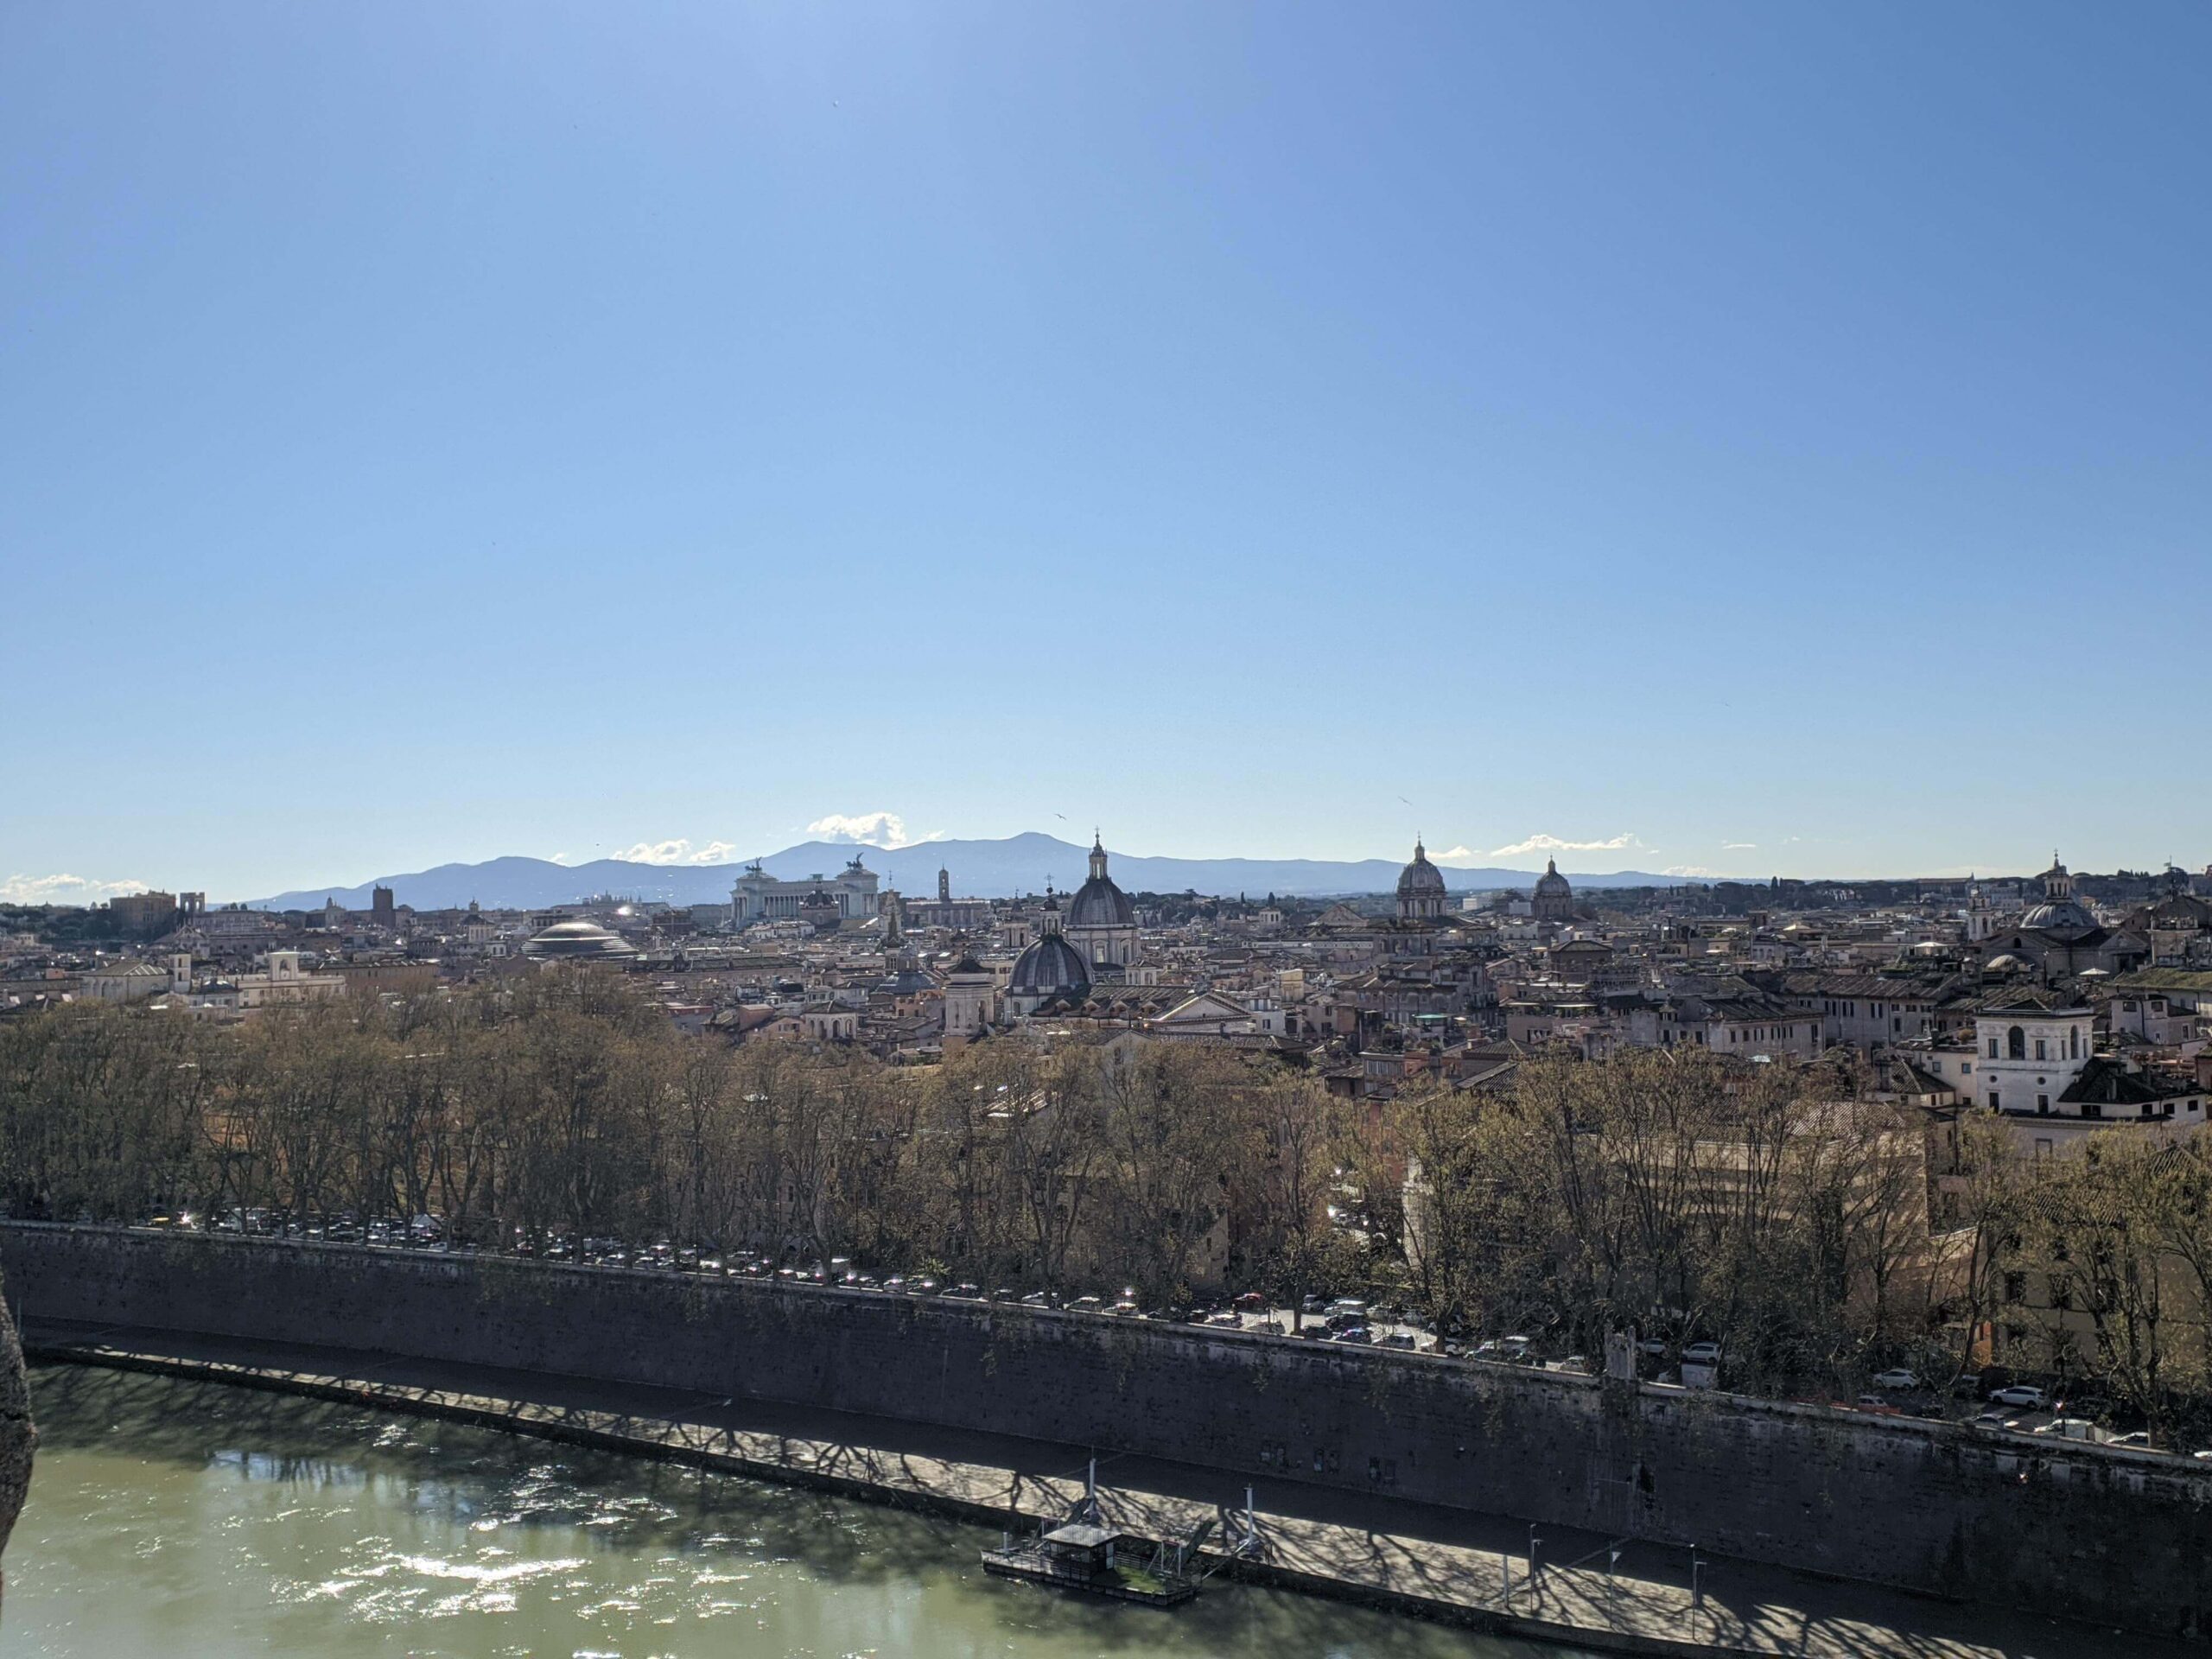 Paisagem urbana de Roma com o horizonte dominado por cúpulas e edifícios históricos, vista sob um céu azul claro.